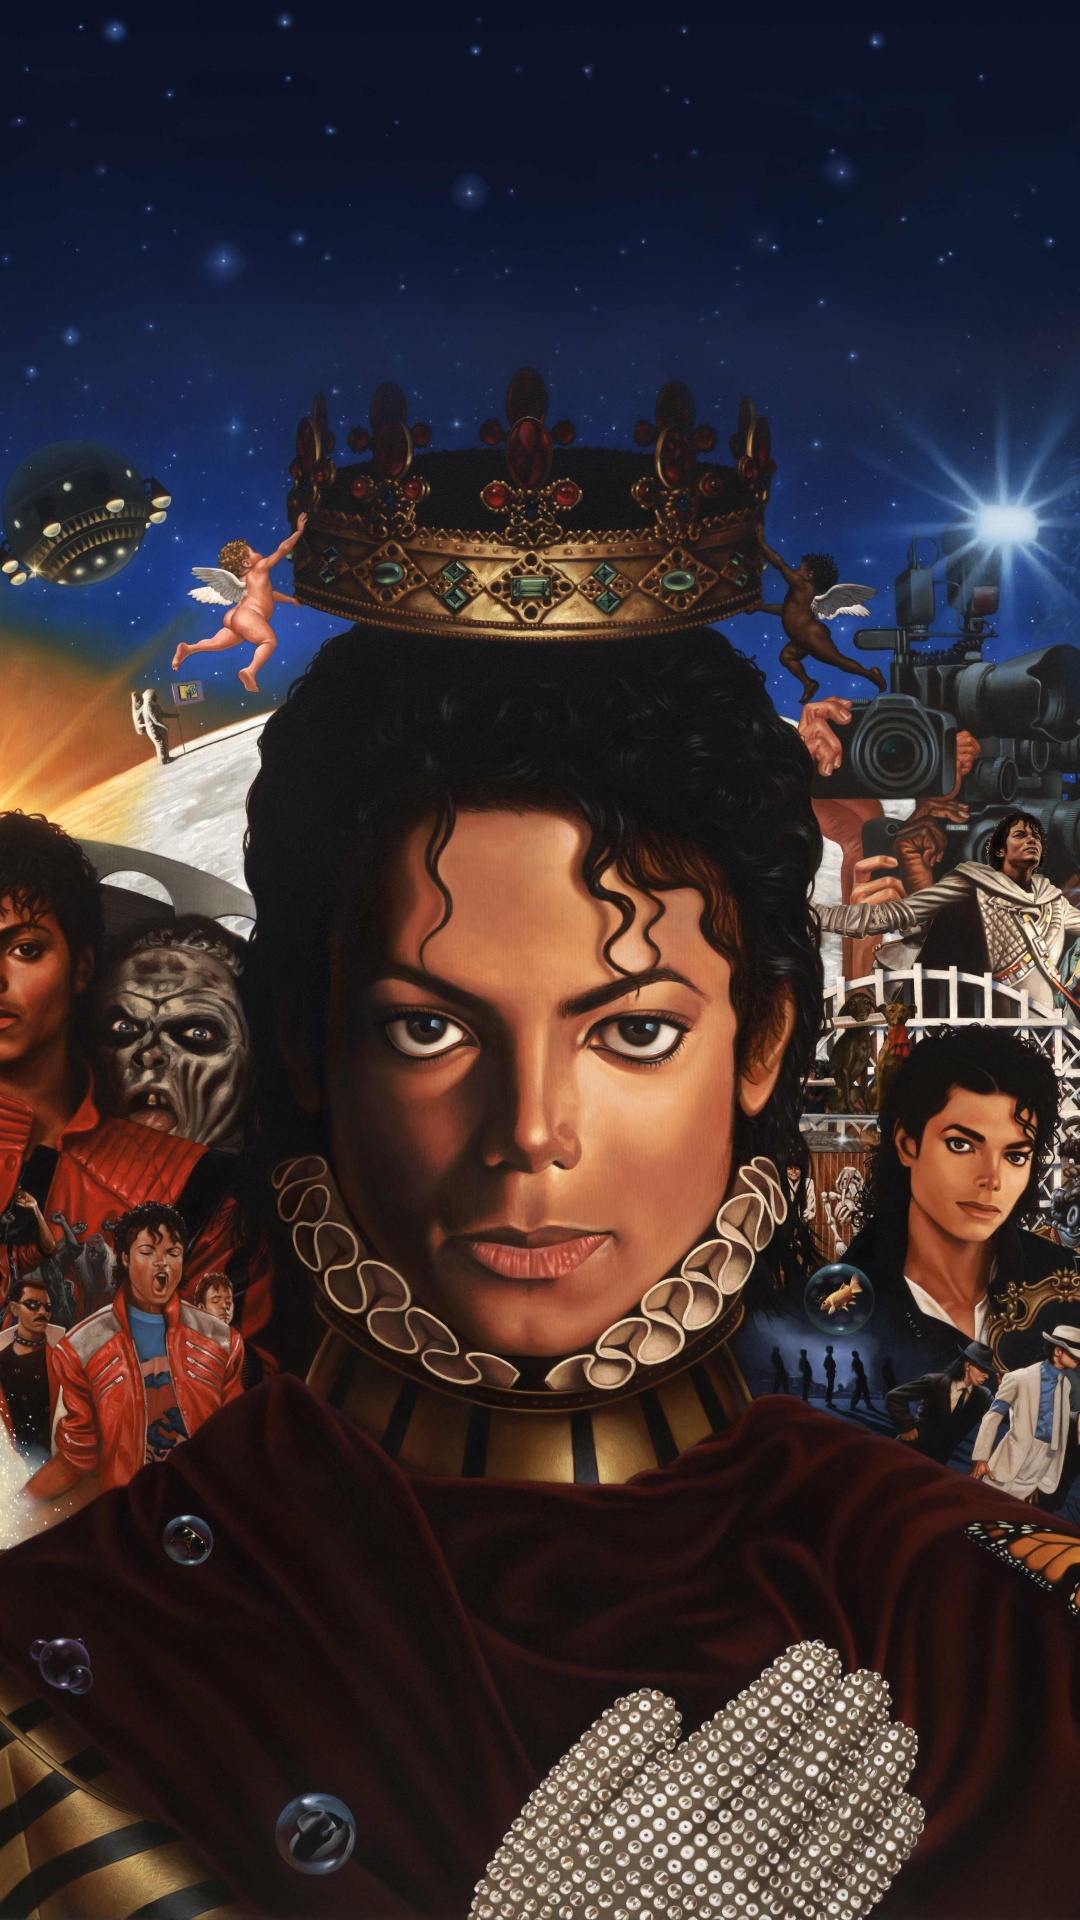 迈克尔*杰克逊, 迈克尔, 专辑, 艺术, 空间 壁纸 1080x1920 允许